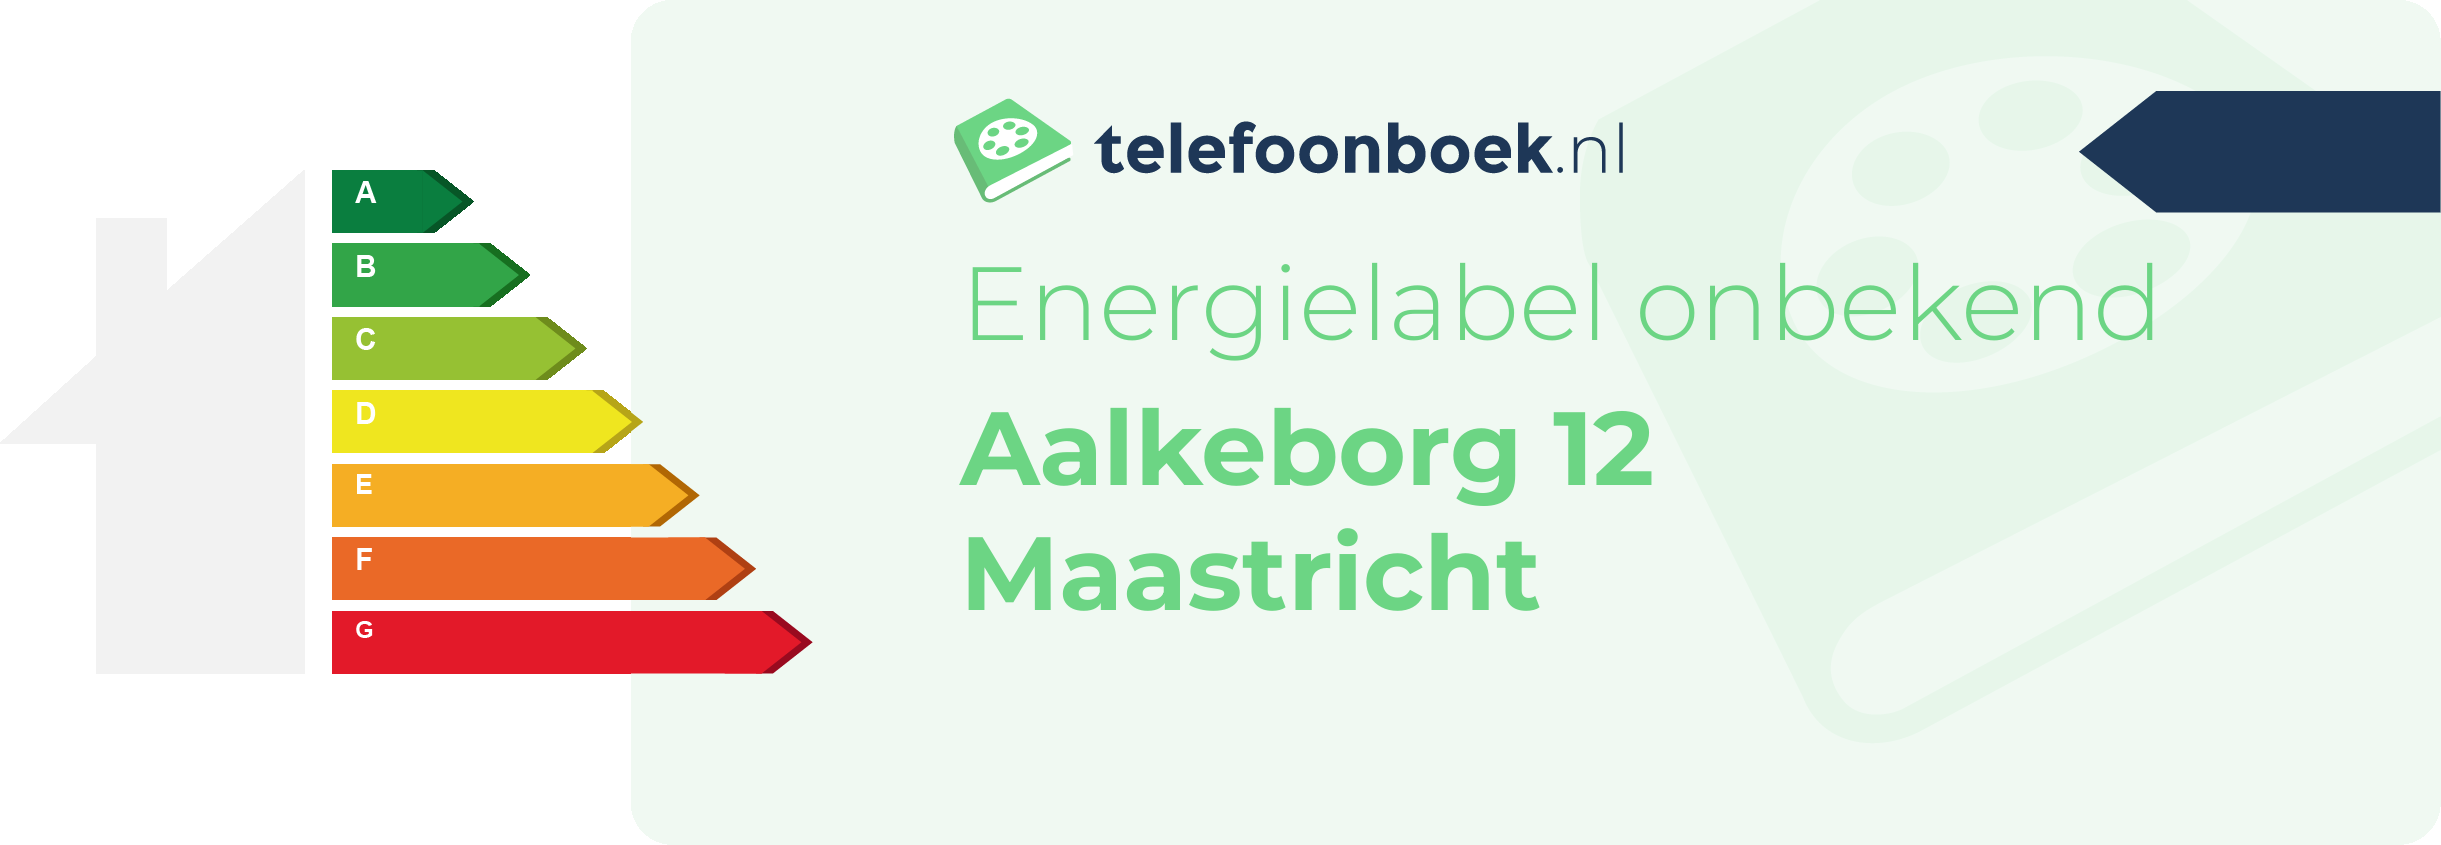 Energielabel Aalkeborg 12 Maastricht